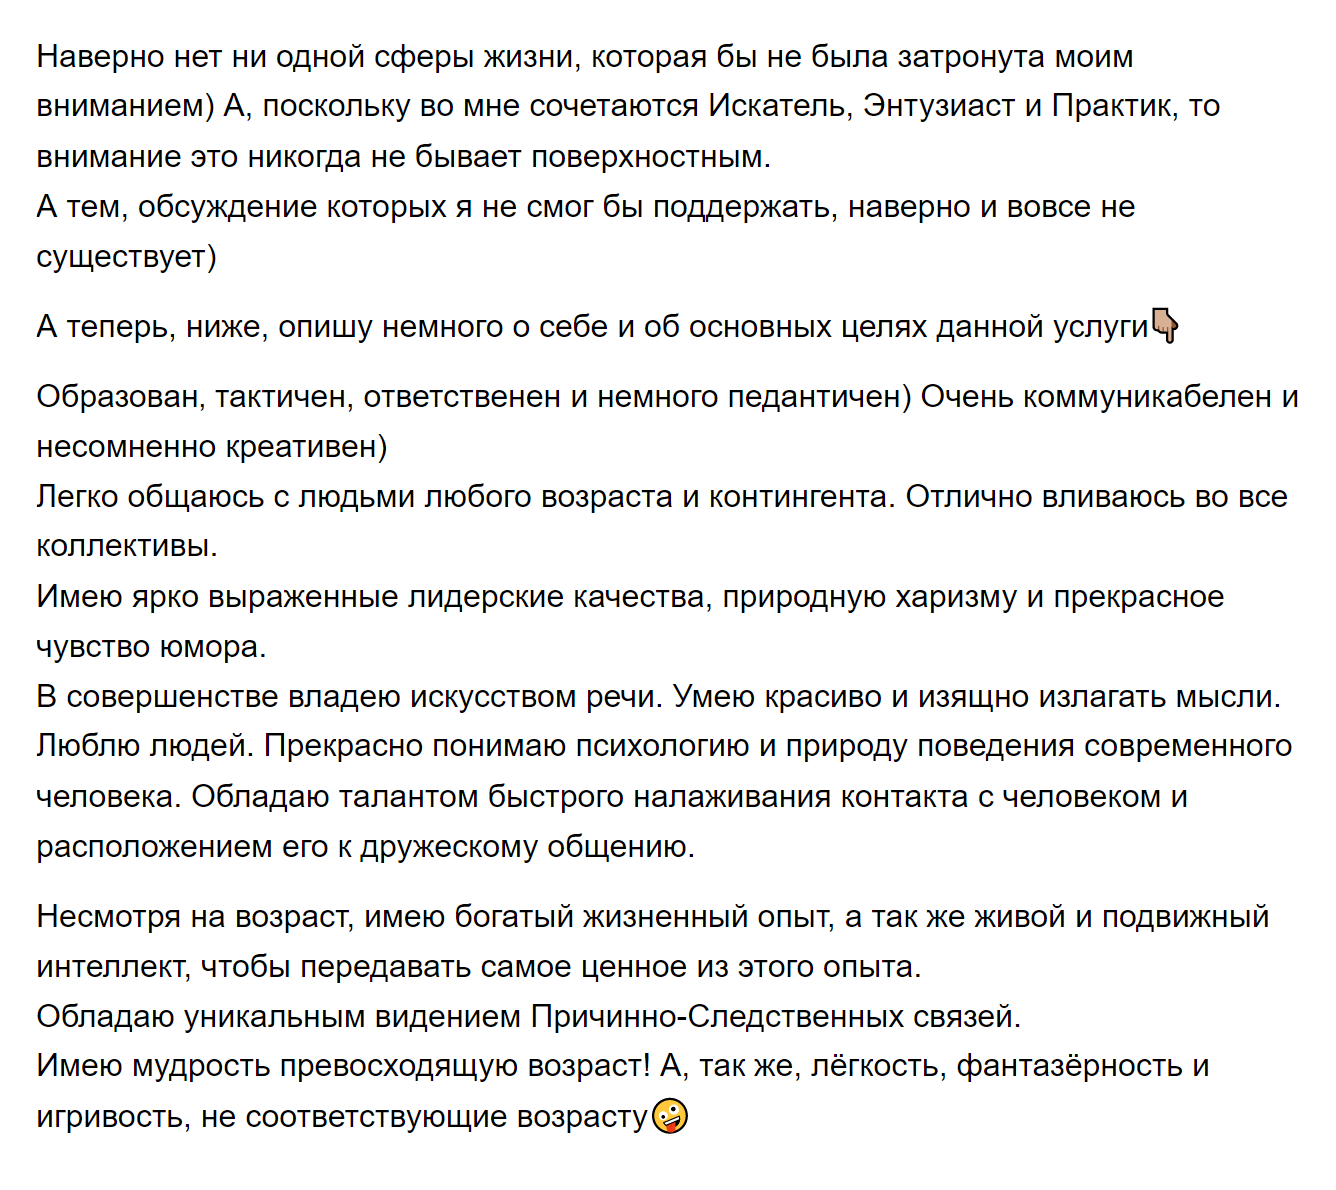 А вот часть его рассказа о себе. Источник: avito.ru